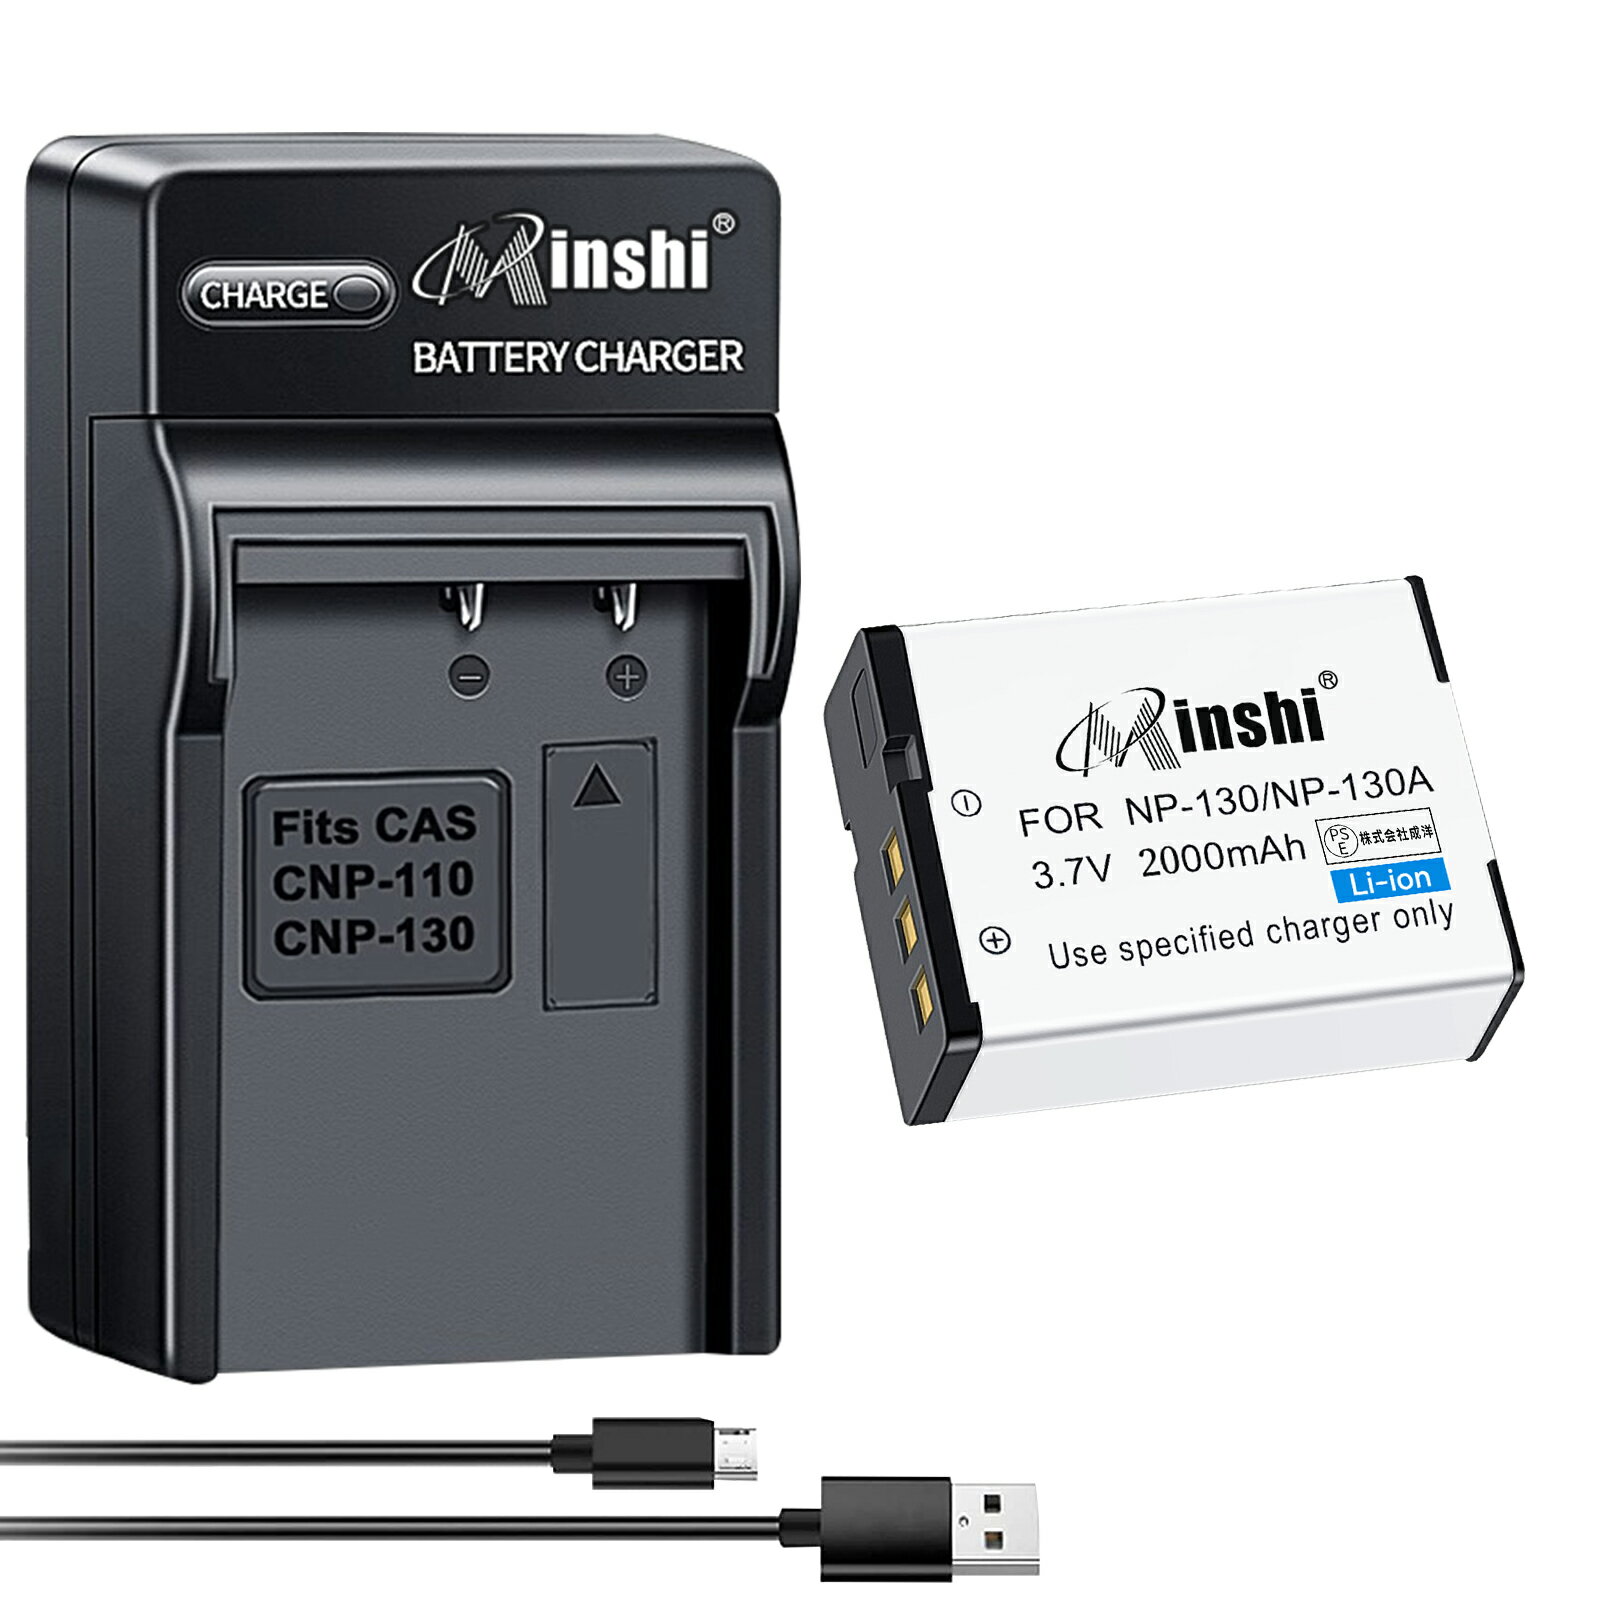 【USB充電器と電池1個】minshi 新品 Casio EX-ZR100 互換バッテリー 2000mAh 高品質交換用リチャージブル カメラバッテリー リチウムイオンバッテリー デジタルカメラ デジカメ 充電池 PSE認証 1年間保証 予備バッテリー